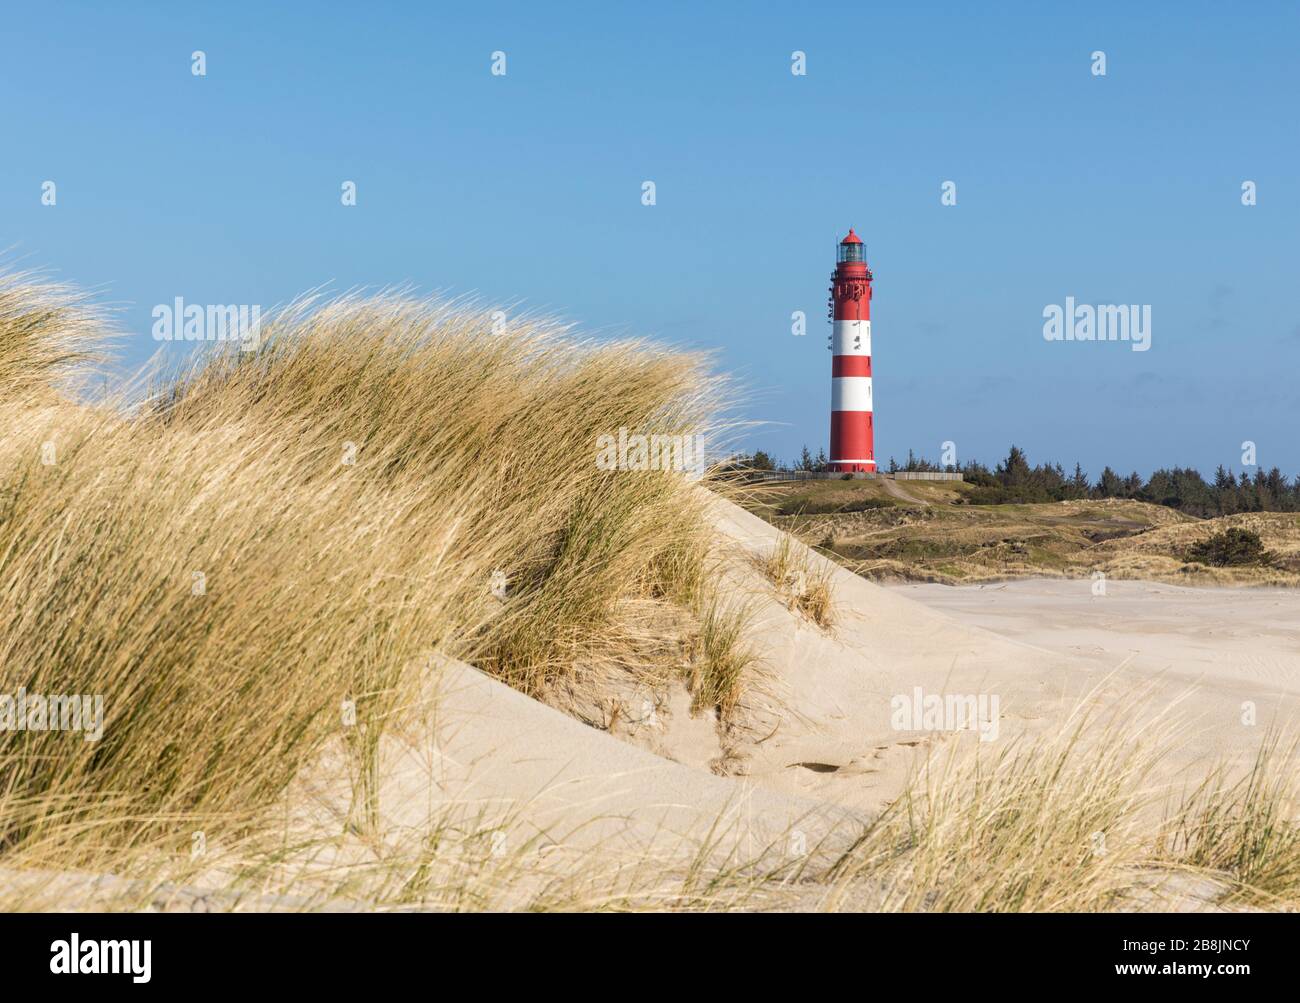 Phare d'Amrum, vue de la plage avec de l'herbe de dune en premier plan Banque D'Images